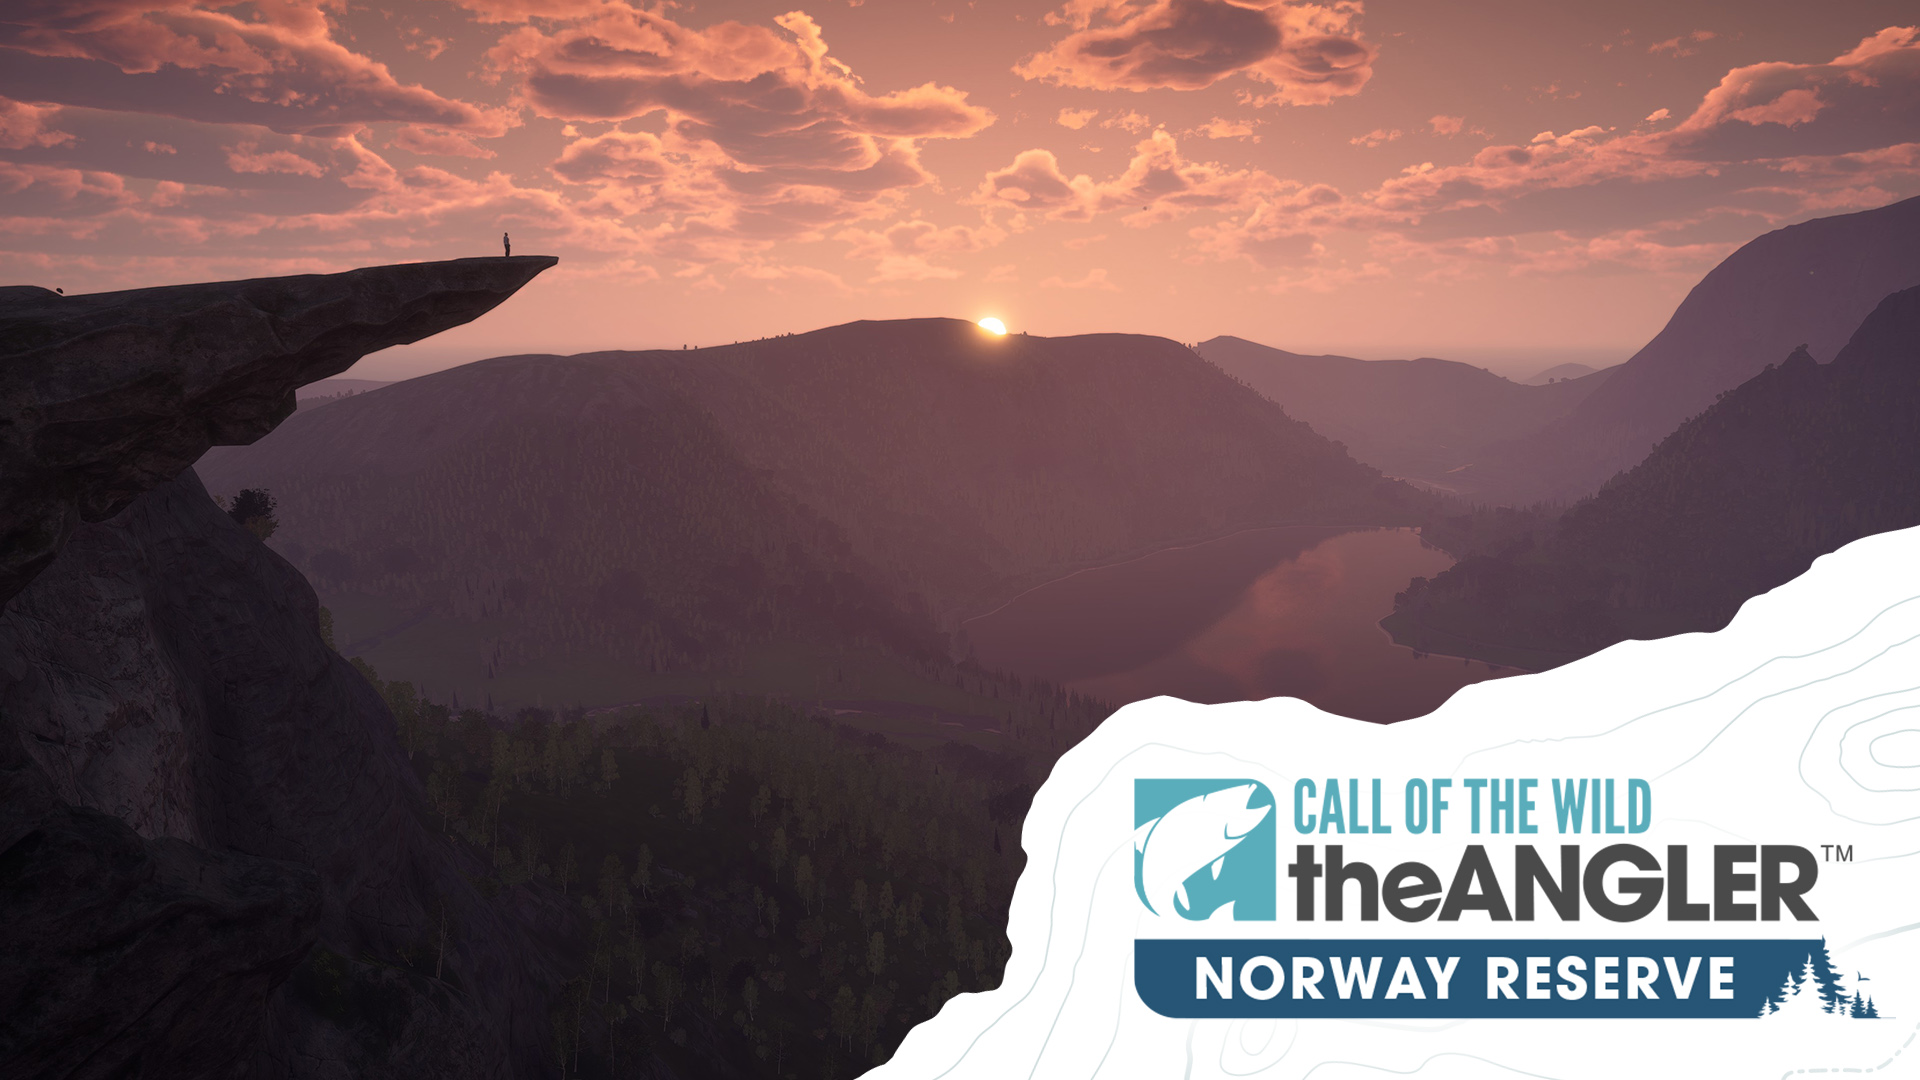 Rezerwat Norwegii jest już dostępny w Call of the Wild: The Angler